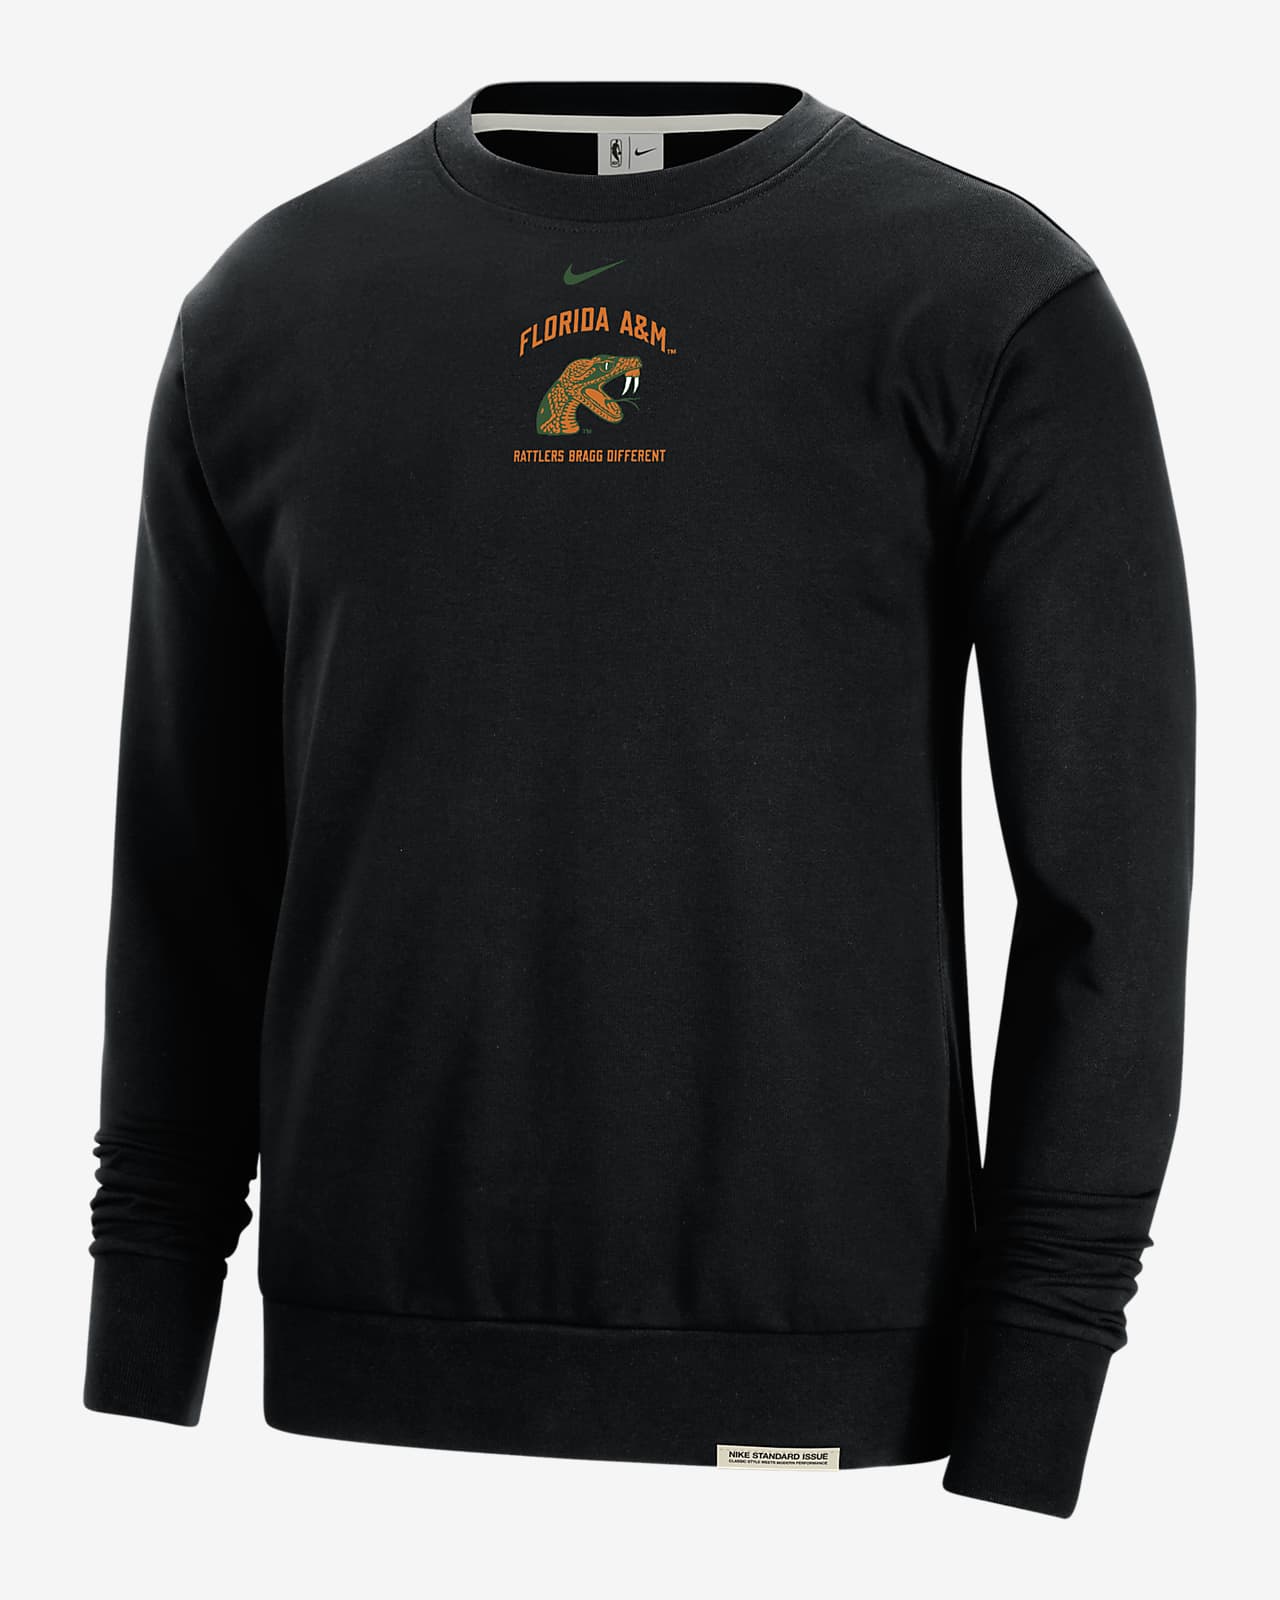 FAMU Standard Issue Men's Nike College Fleece Crew-Neck Sweatshirt